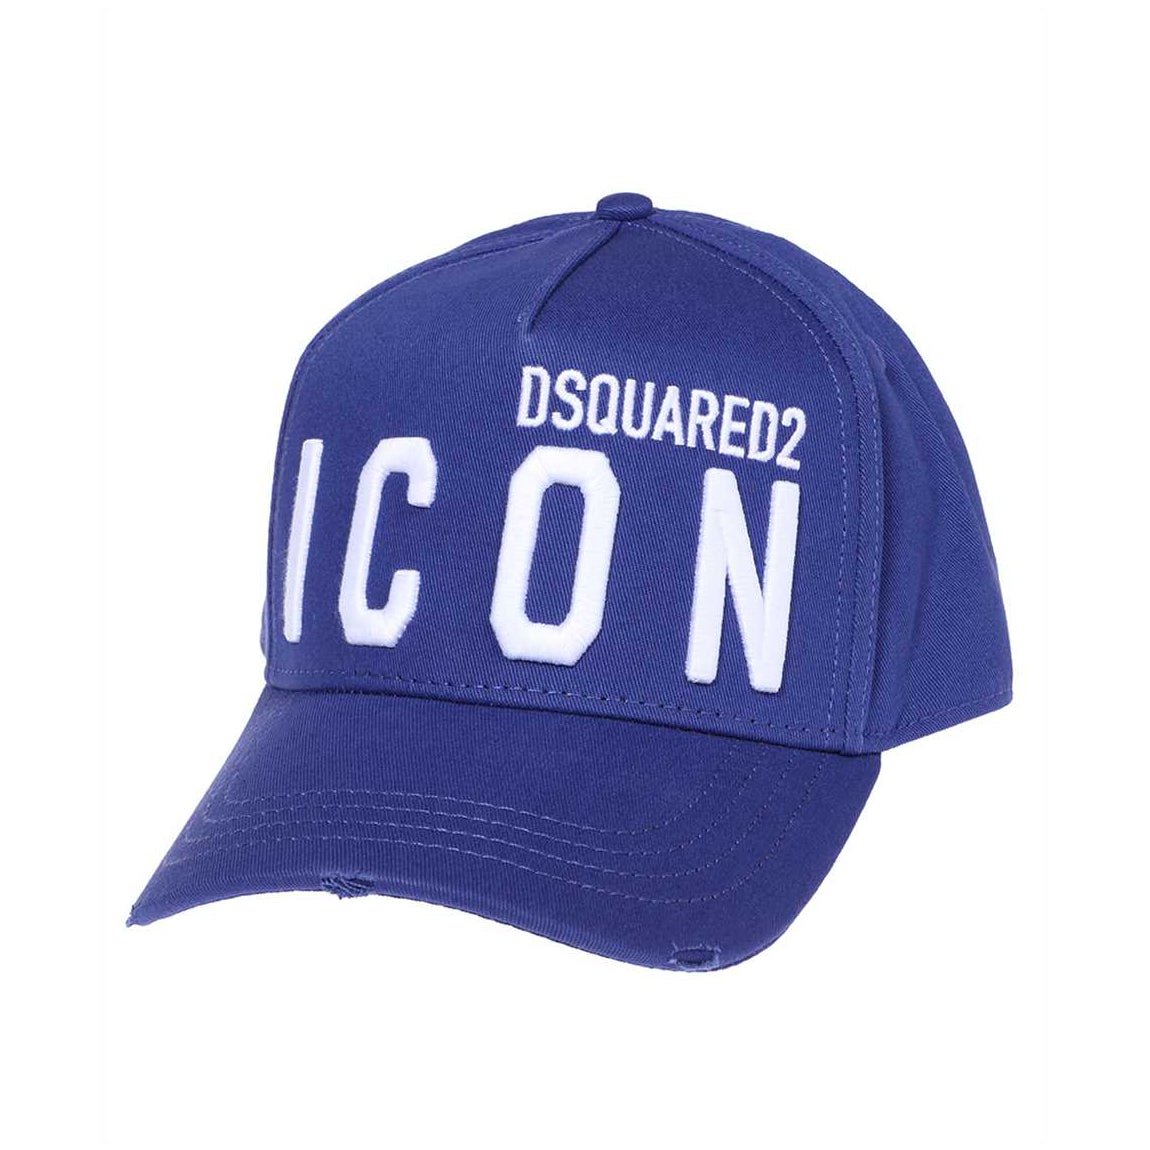 Dsquared2 Icon Cap - Electric Blue - Escape Menswear